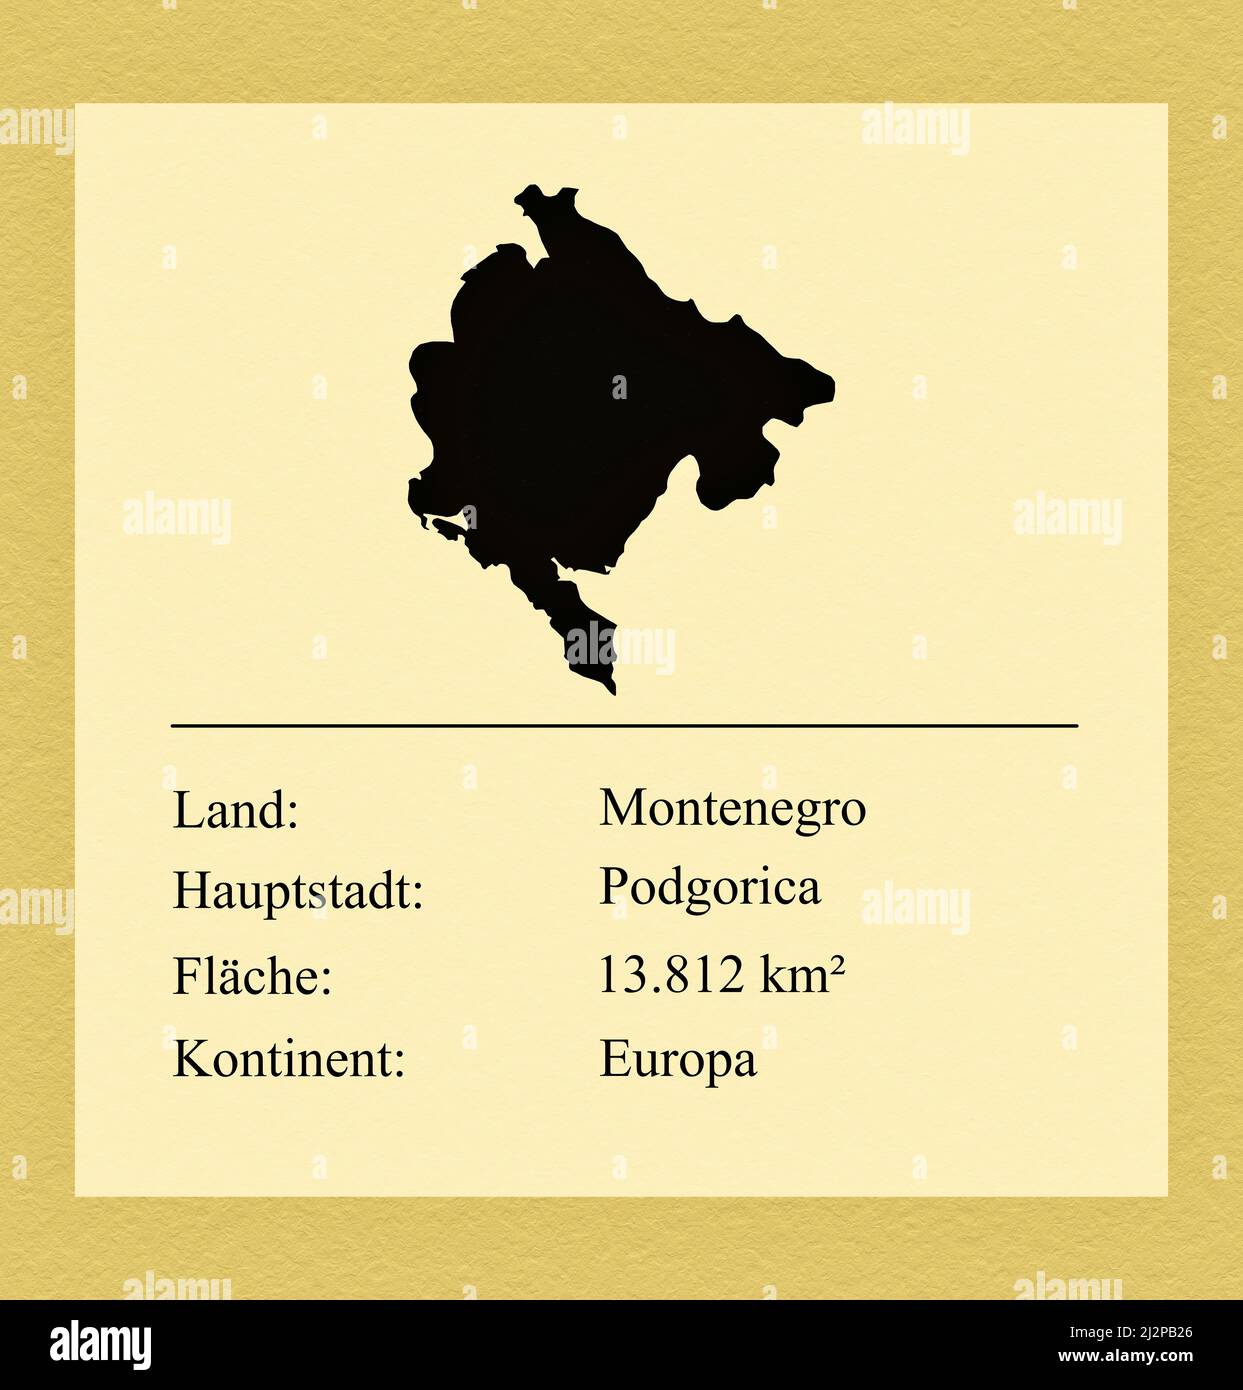 Umrisse des Landes Montenegro, darunter ein kleiner Steckbrief mit Ländernamen, Hauptstadt, Fläche und Kontinent Foto Stock